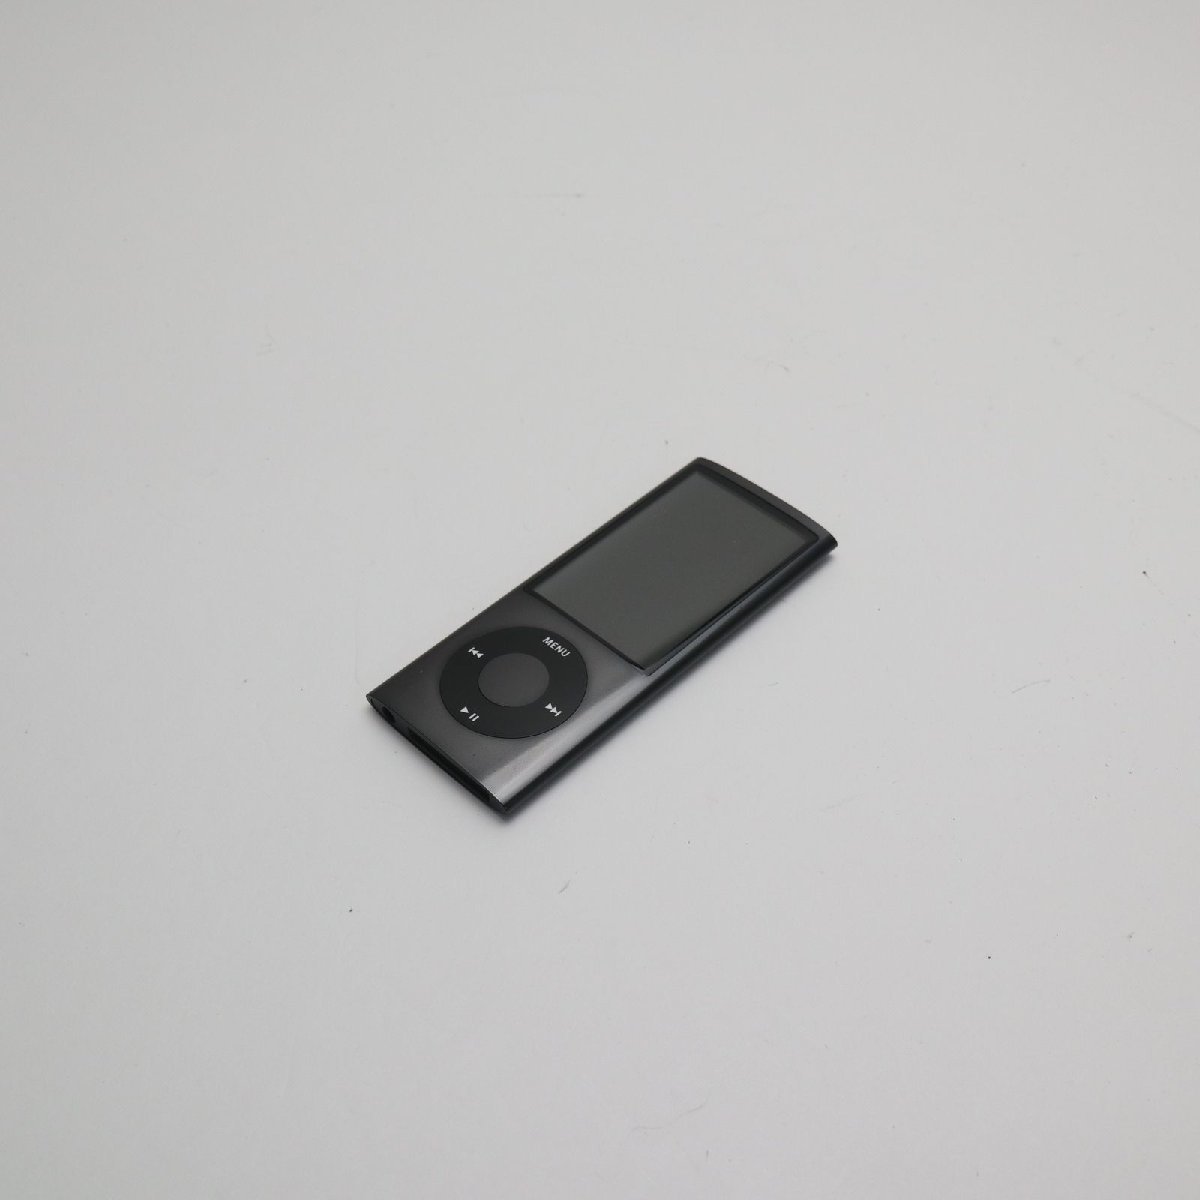 新品同様 iPOD nano 第5世代 8GB ブラック 即日発送 MC031J/A 本体 あすつく 土日祝発送OK